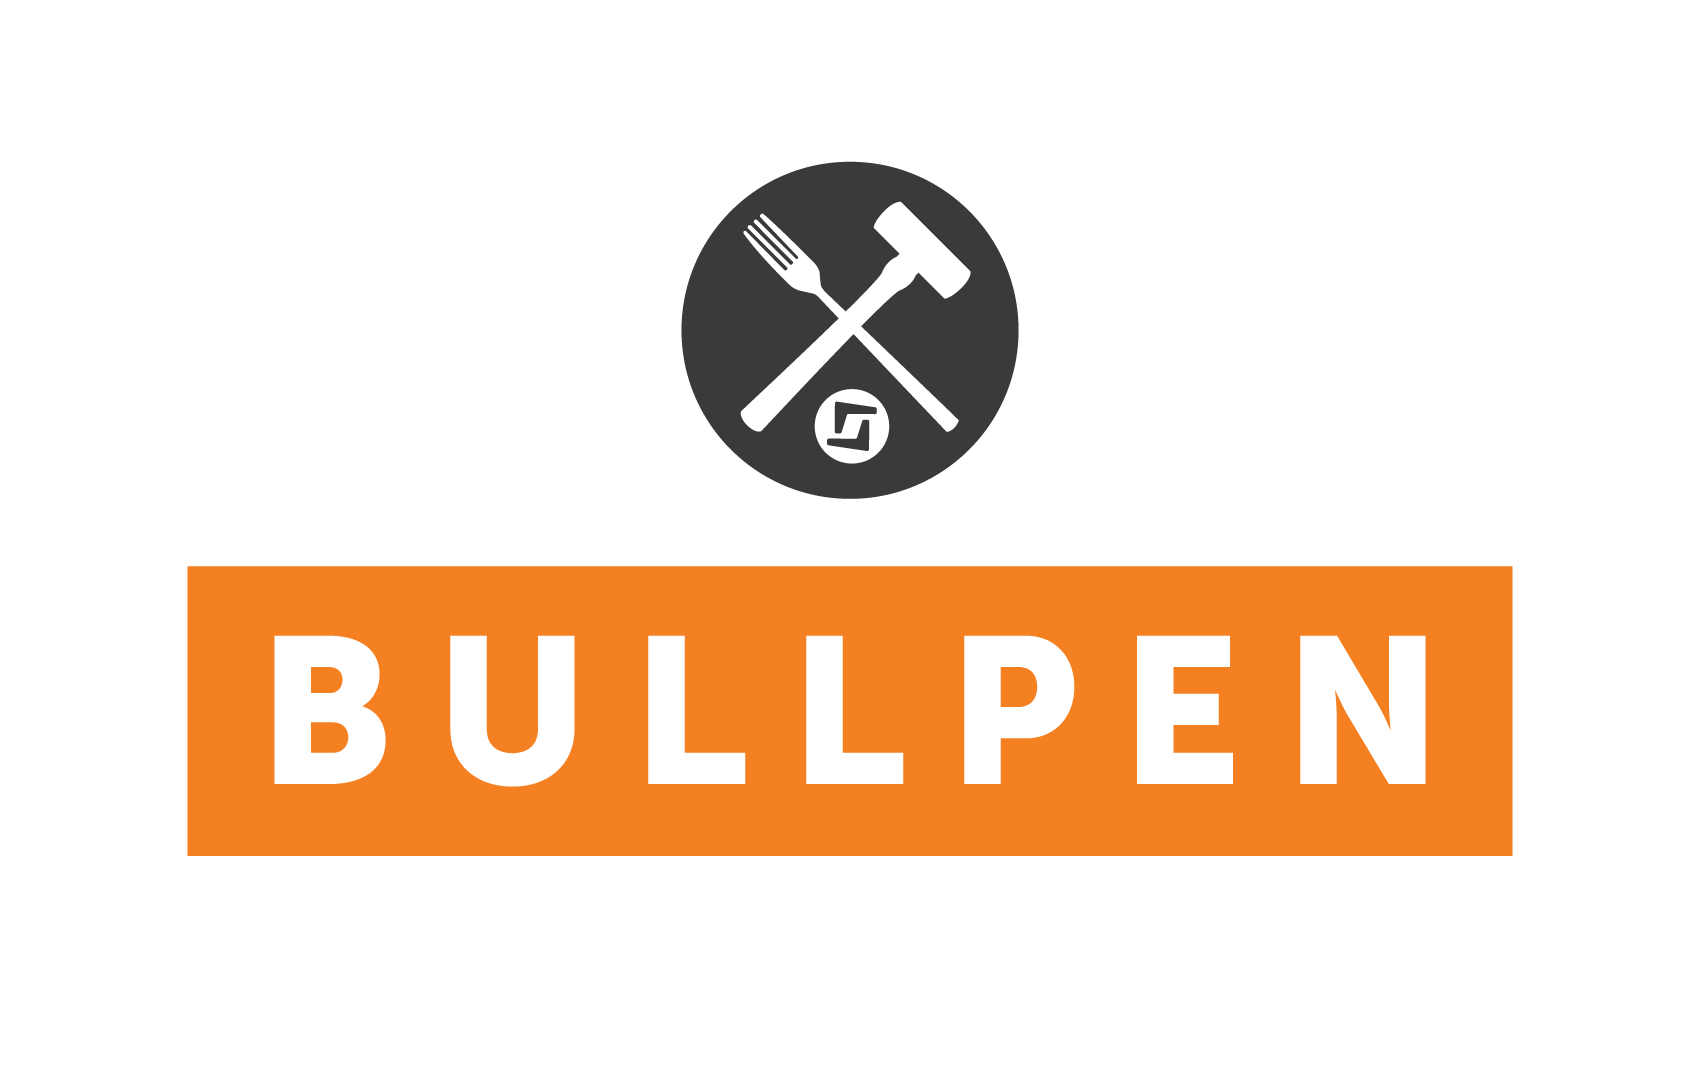 New Bullpen